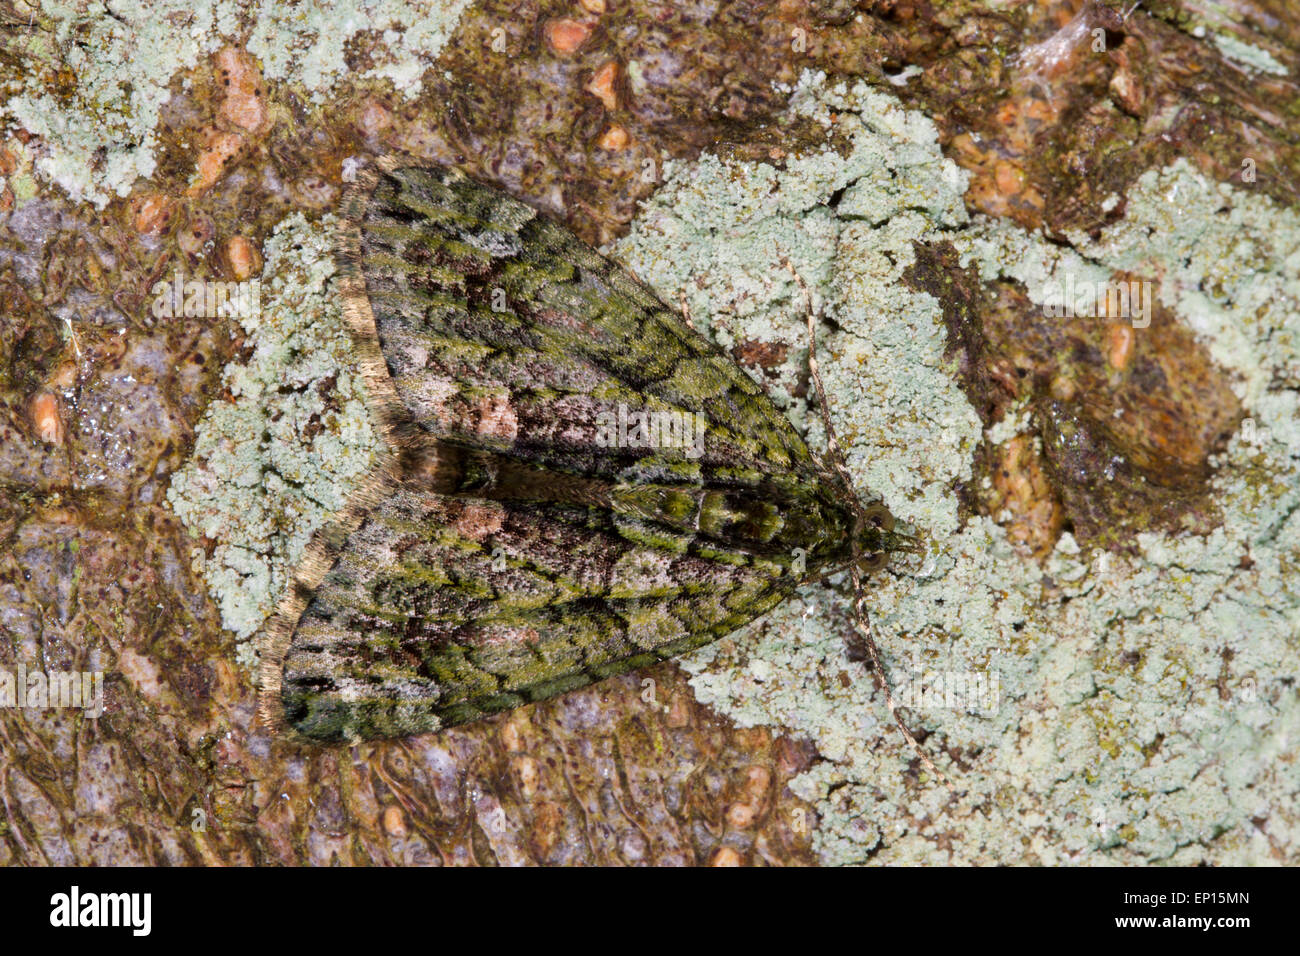 Tapis rouge-vert (Chloroclysta siterata) papillon adulte reposant sur l'écorce d'un arbre. Powys, Pays de Galles. Septembre. Banque D'Images